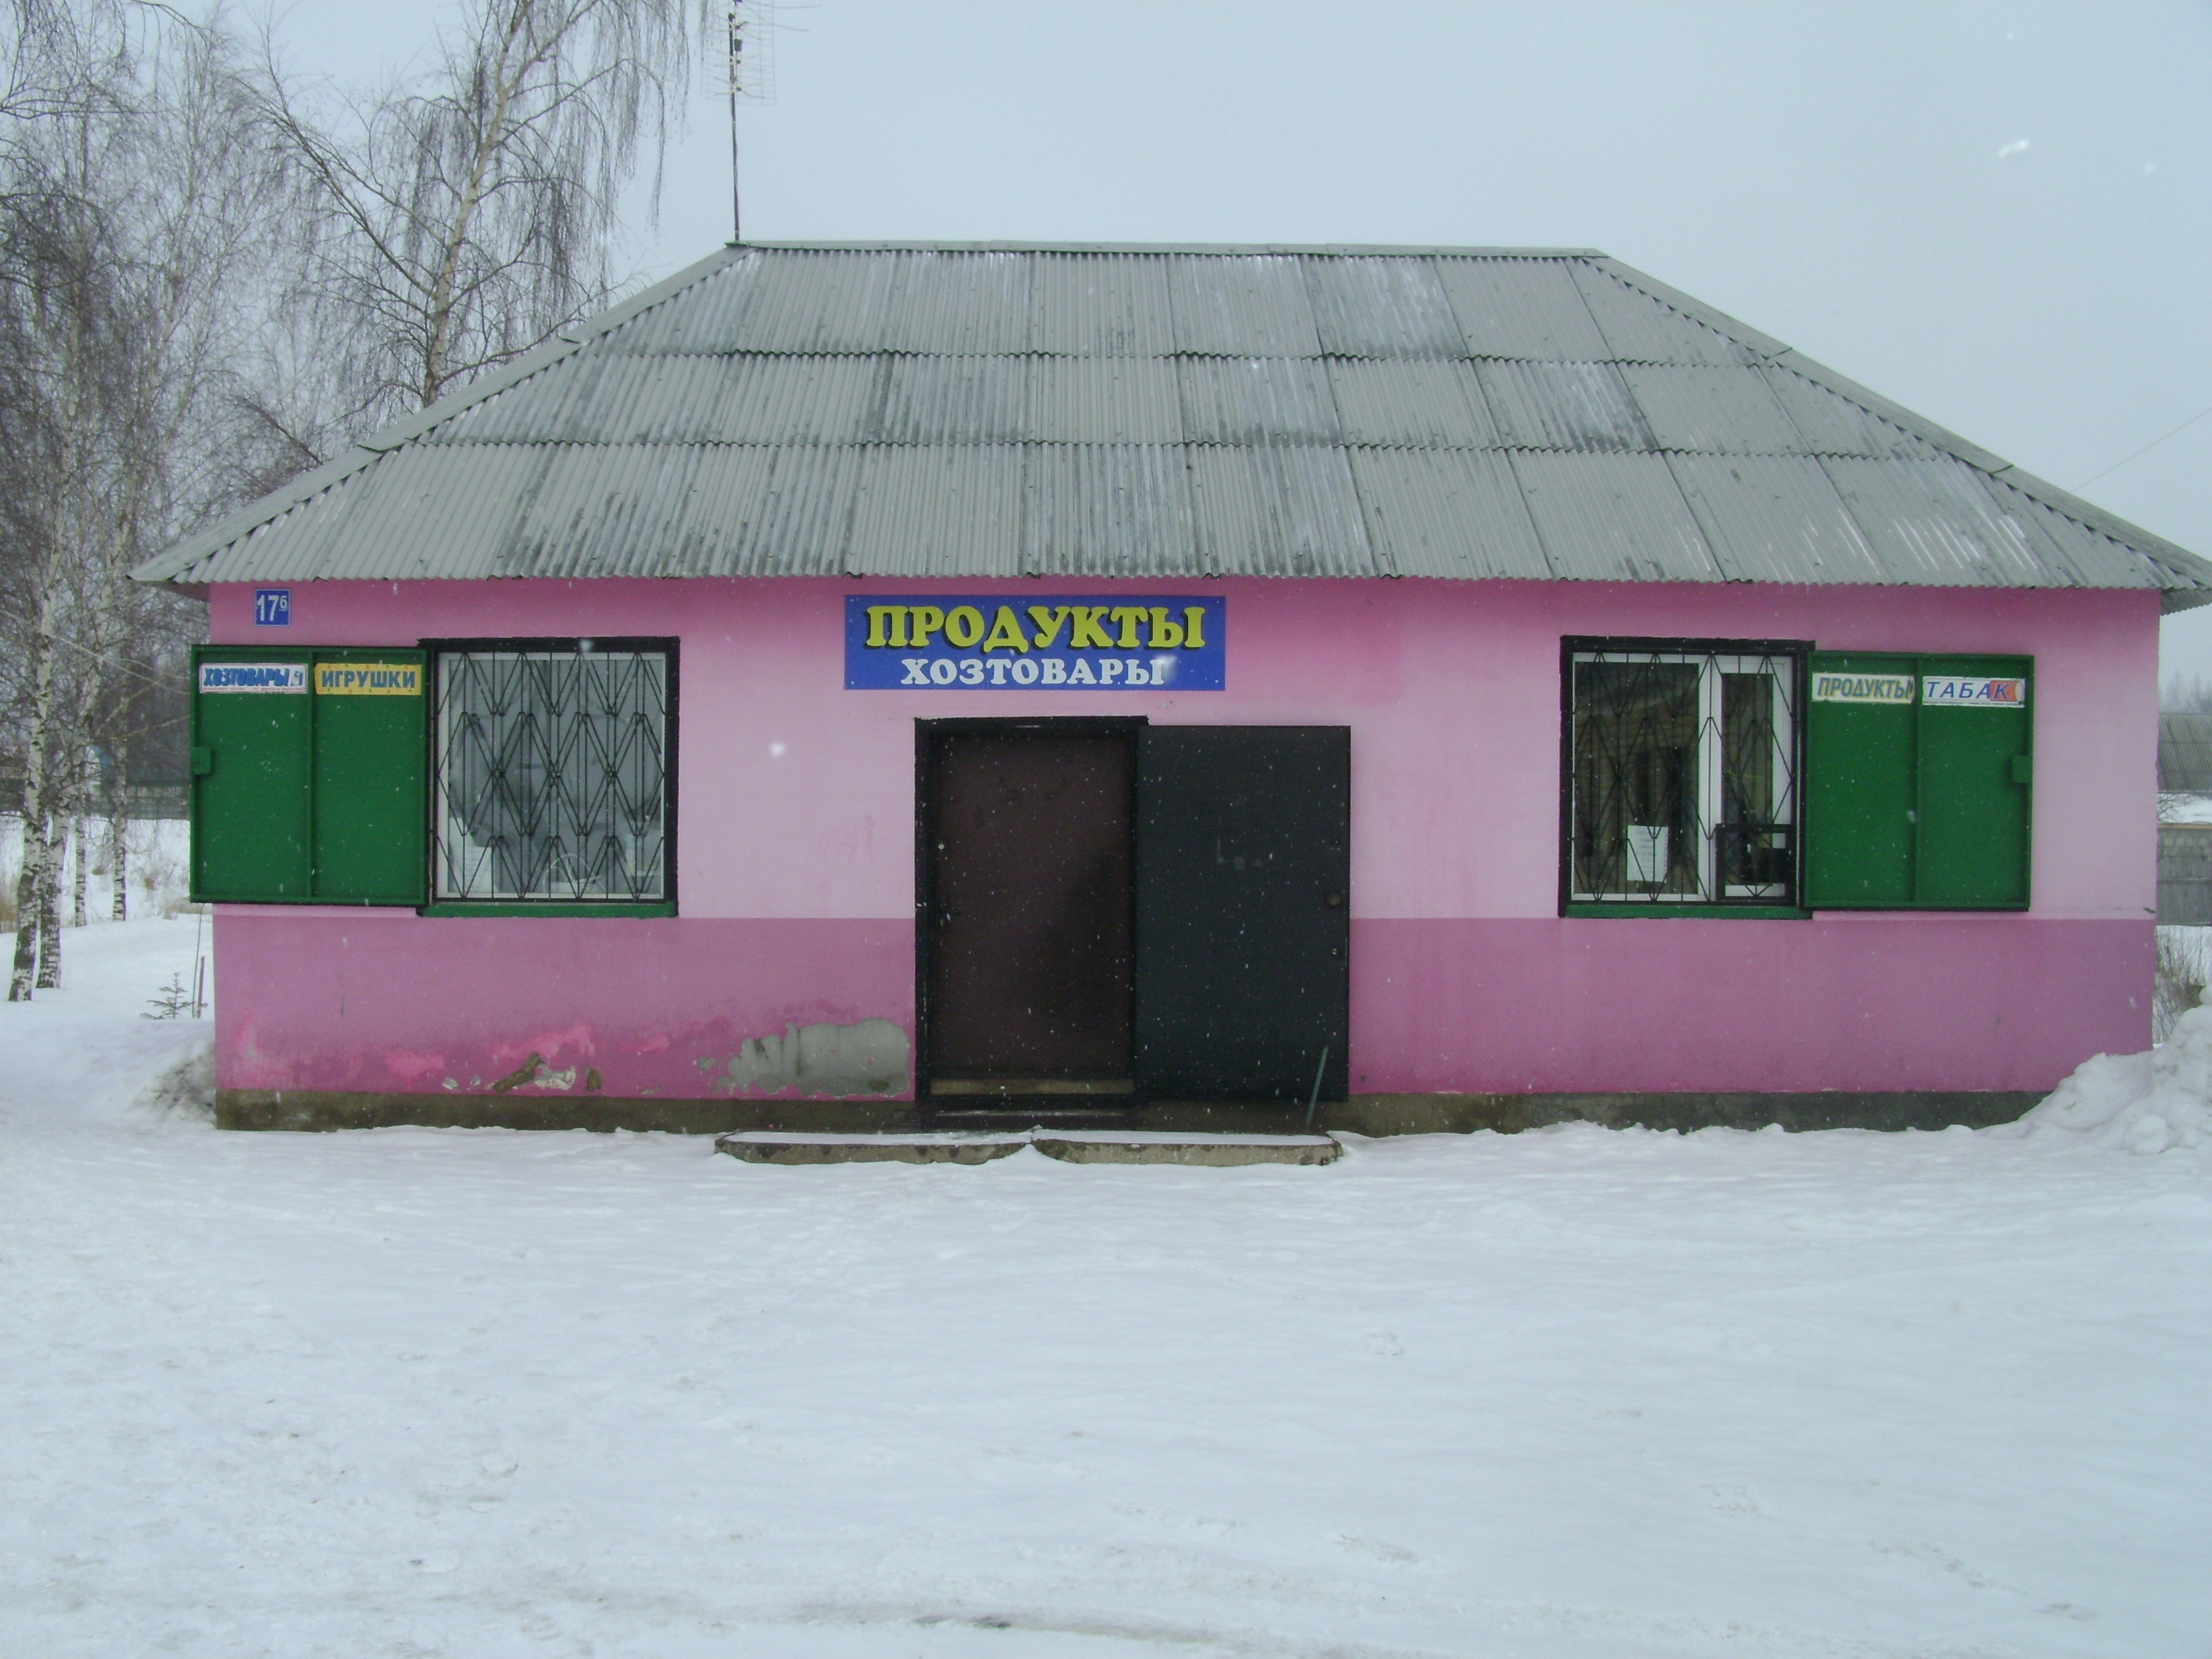 Аренда Помещения Под Магазин Новосибирская Область